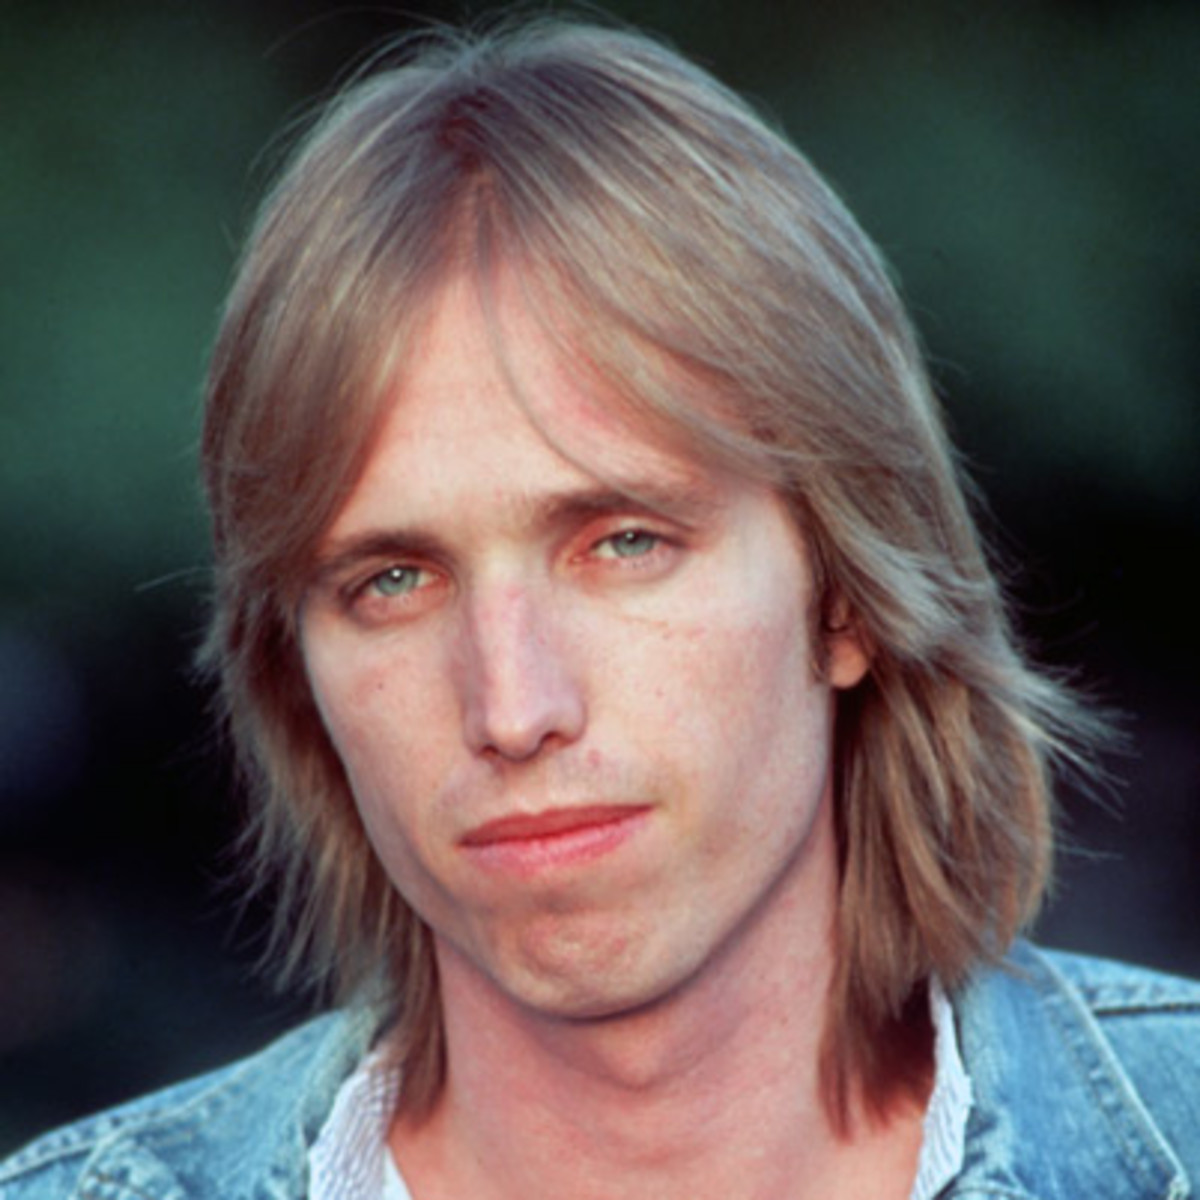 Morre o músico Tom Petty, aos 66 anos